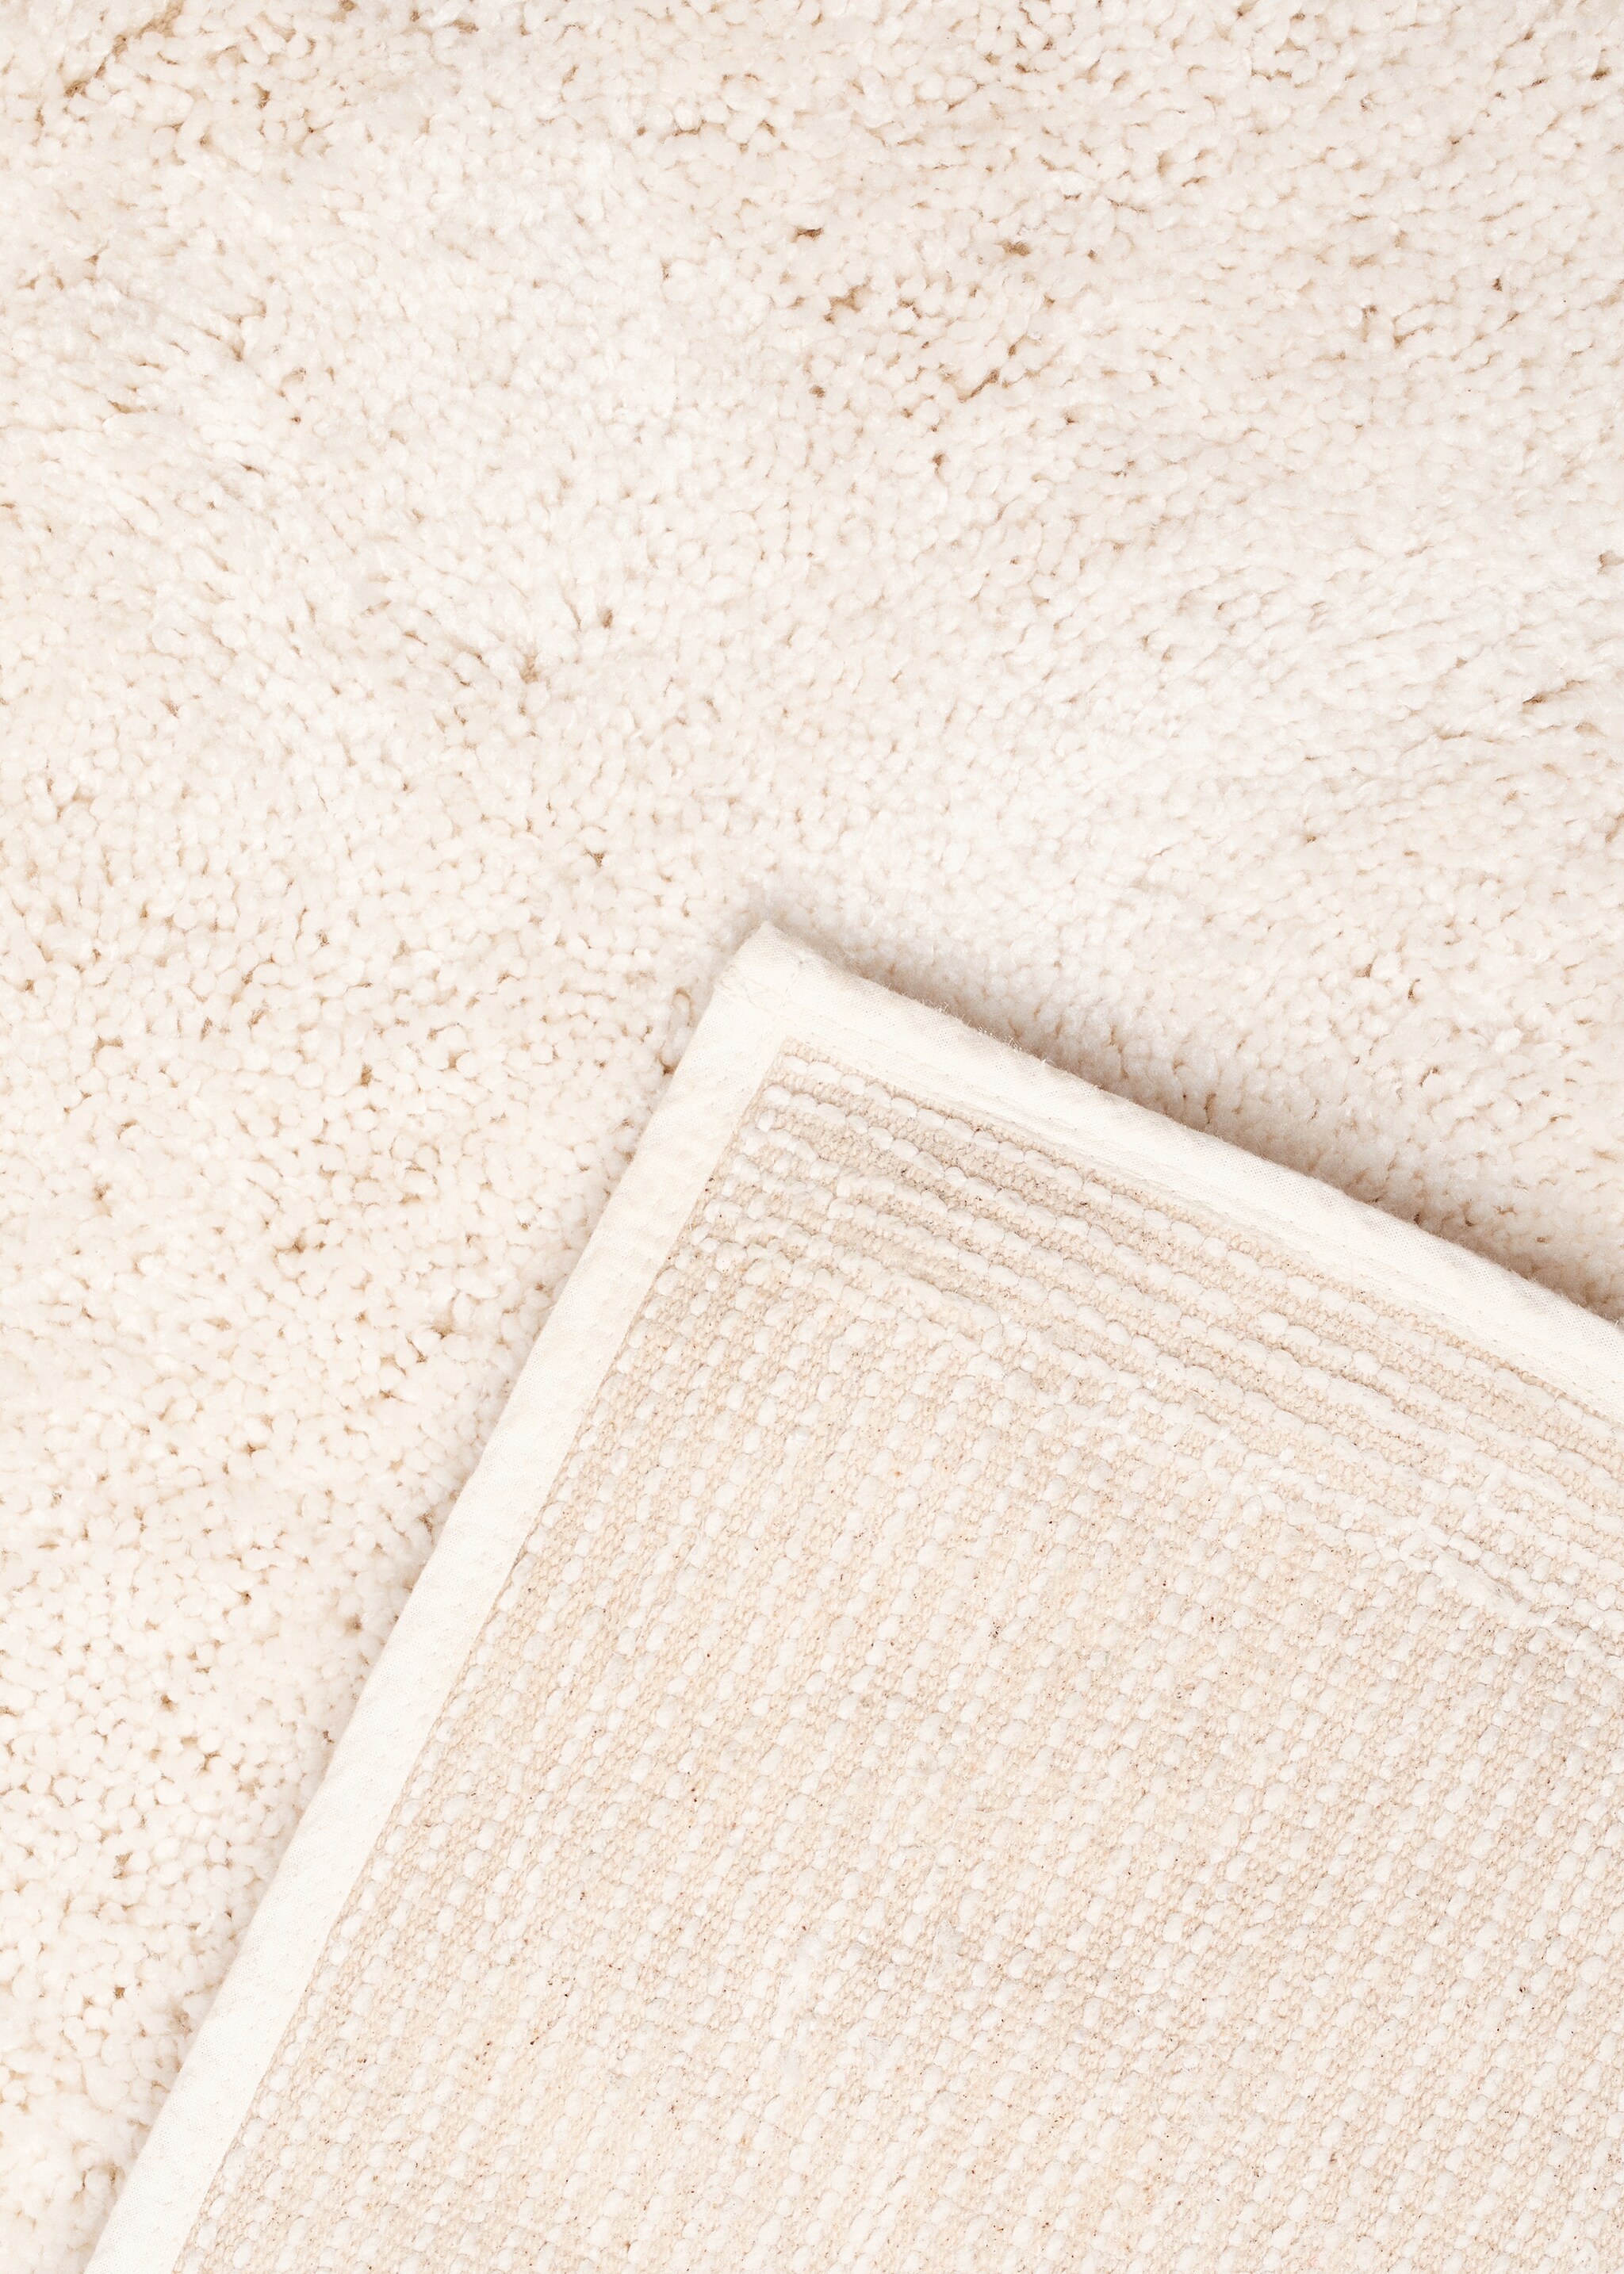 Pile carpet 150x200cm - Details of the article 2